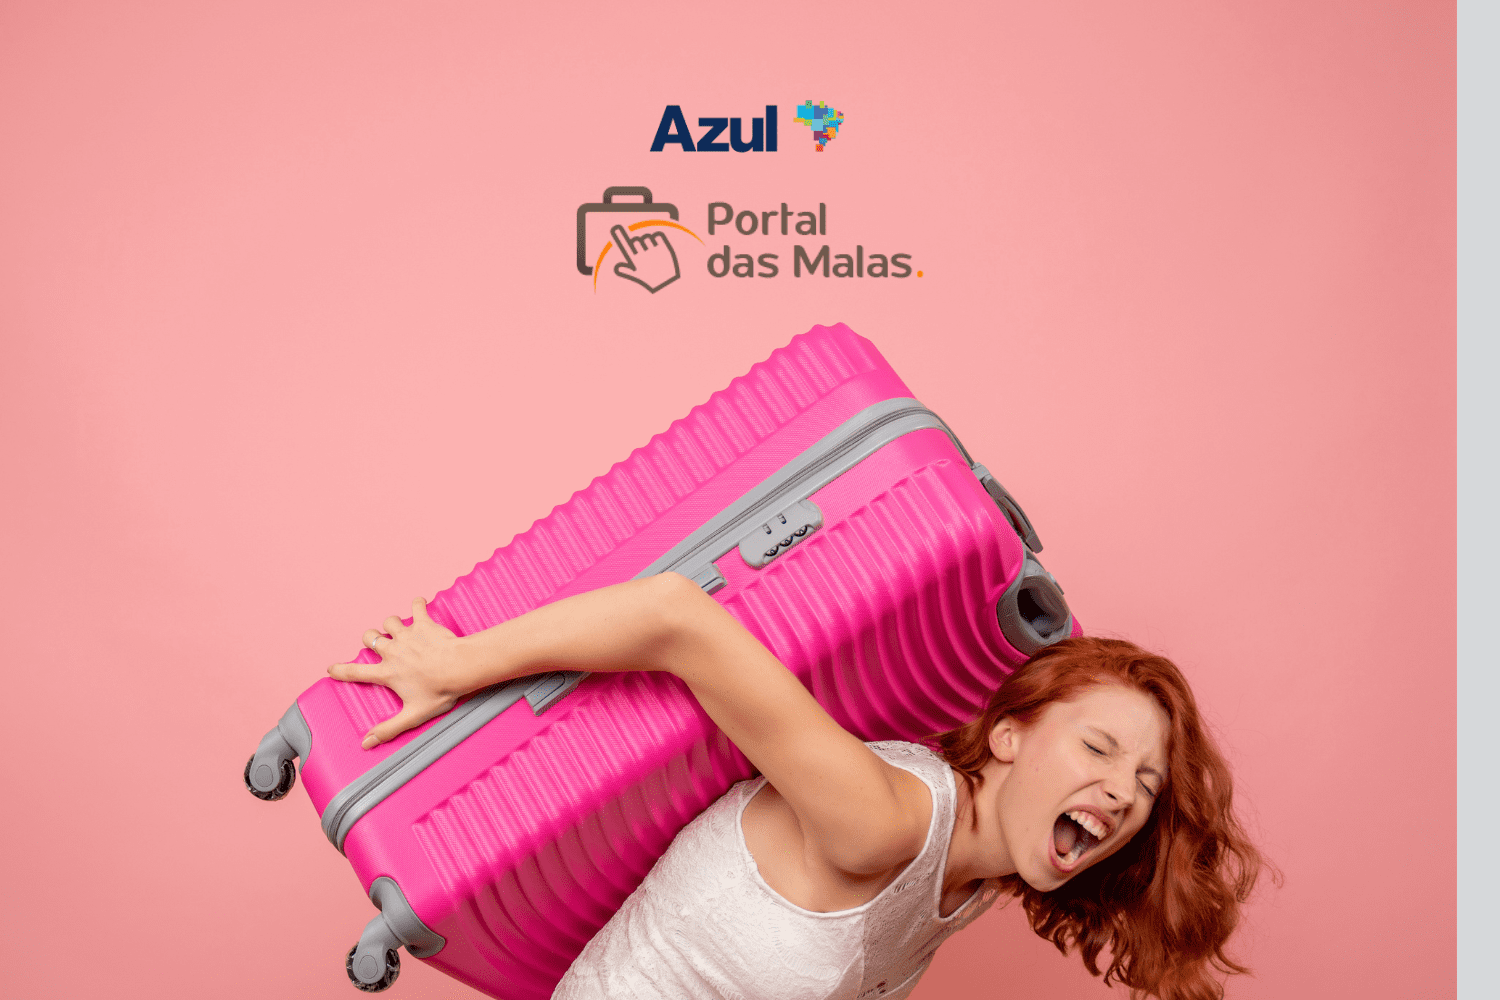 Ganhe até 14 pontos Azul por real no Portal das Malas! Mulher segurando uma mala rosa nas costas, com um fundo rosa e os logotipos da Azul e Portal das Malas no topo da imagem.